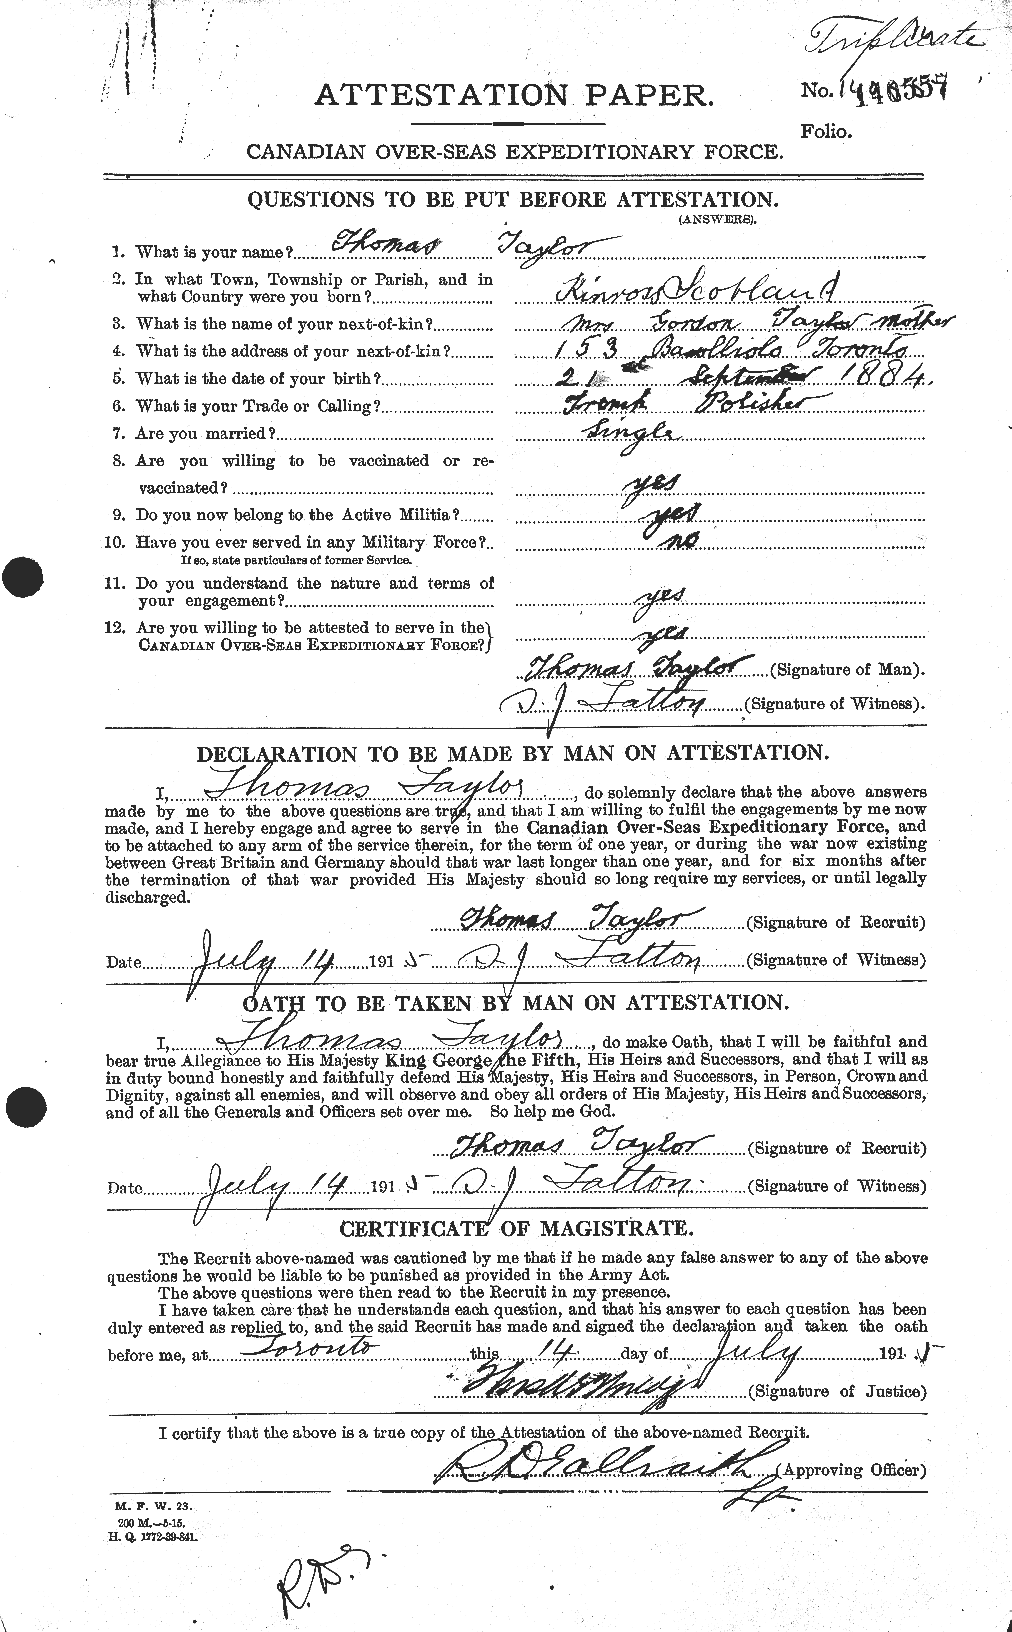 Dossiers du Personnel de la Première Guerre mondiale - CEC 627948a